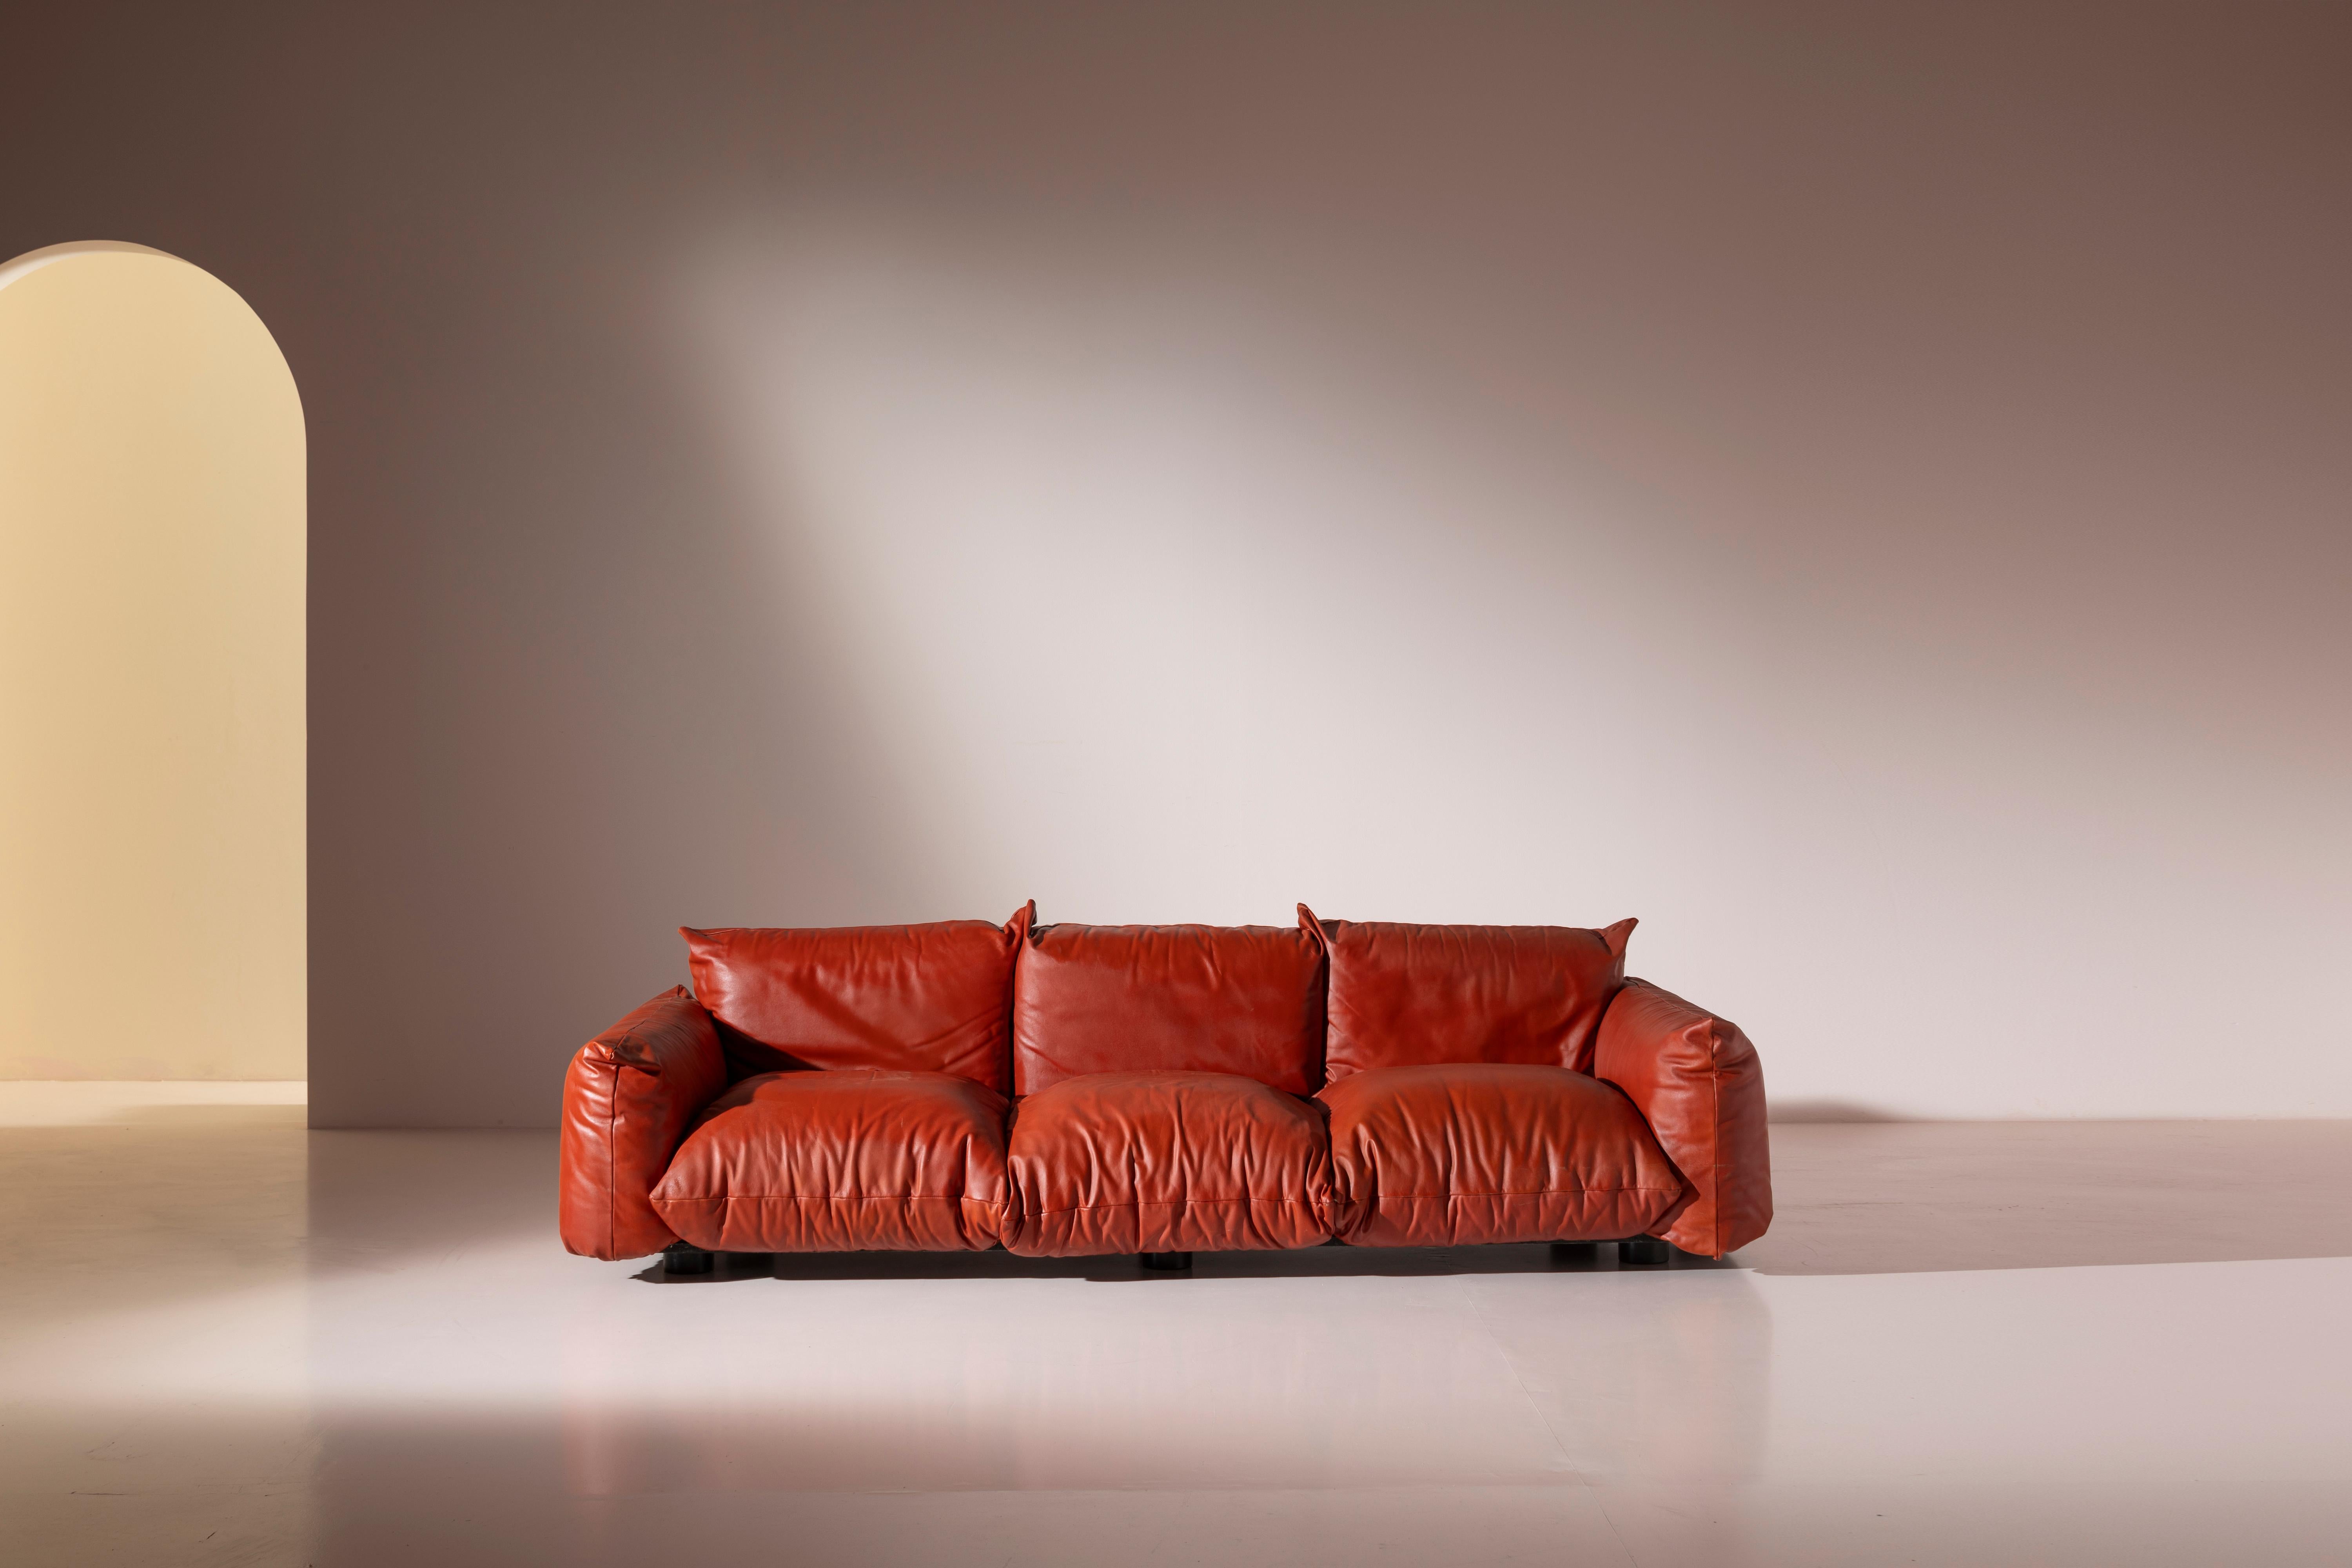 Ein dreisitziges Marenco-Ledersofa von Arflex aus den 1970er Jahren in Erstauflage, entworfen von dem talentierten Mario Marenco.

Das 1970 eingeführte Sofa zeichnet sich durch eine modulare Architektur aus, die aus unterschiedlichen Sitz-, Rücken-